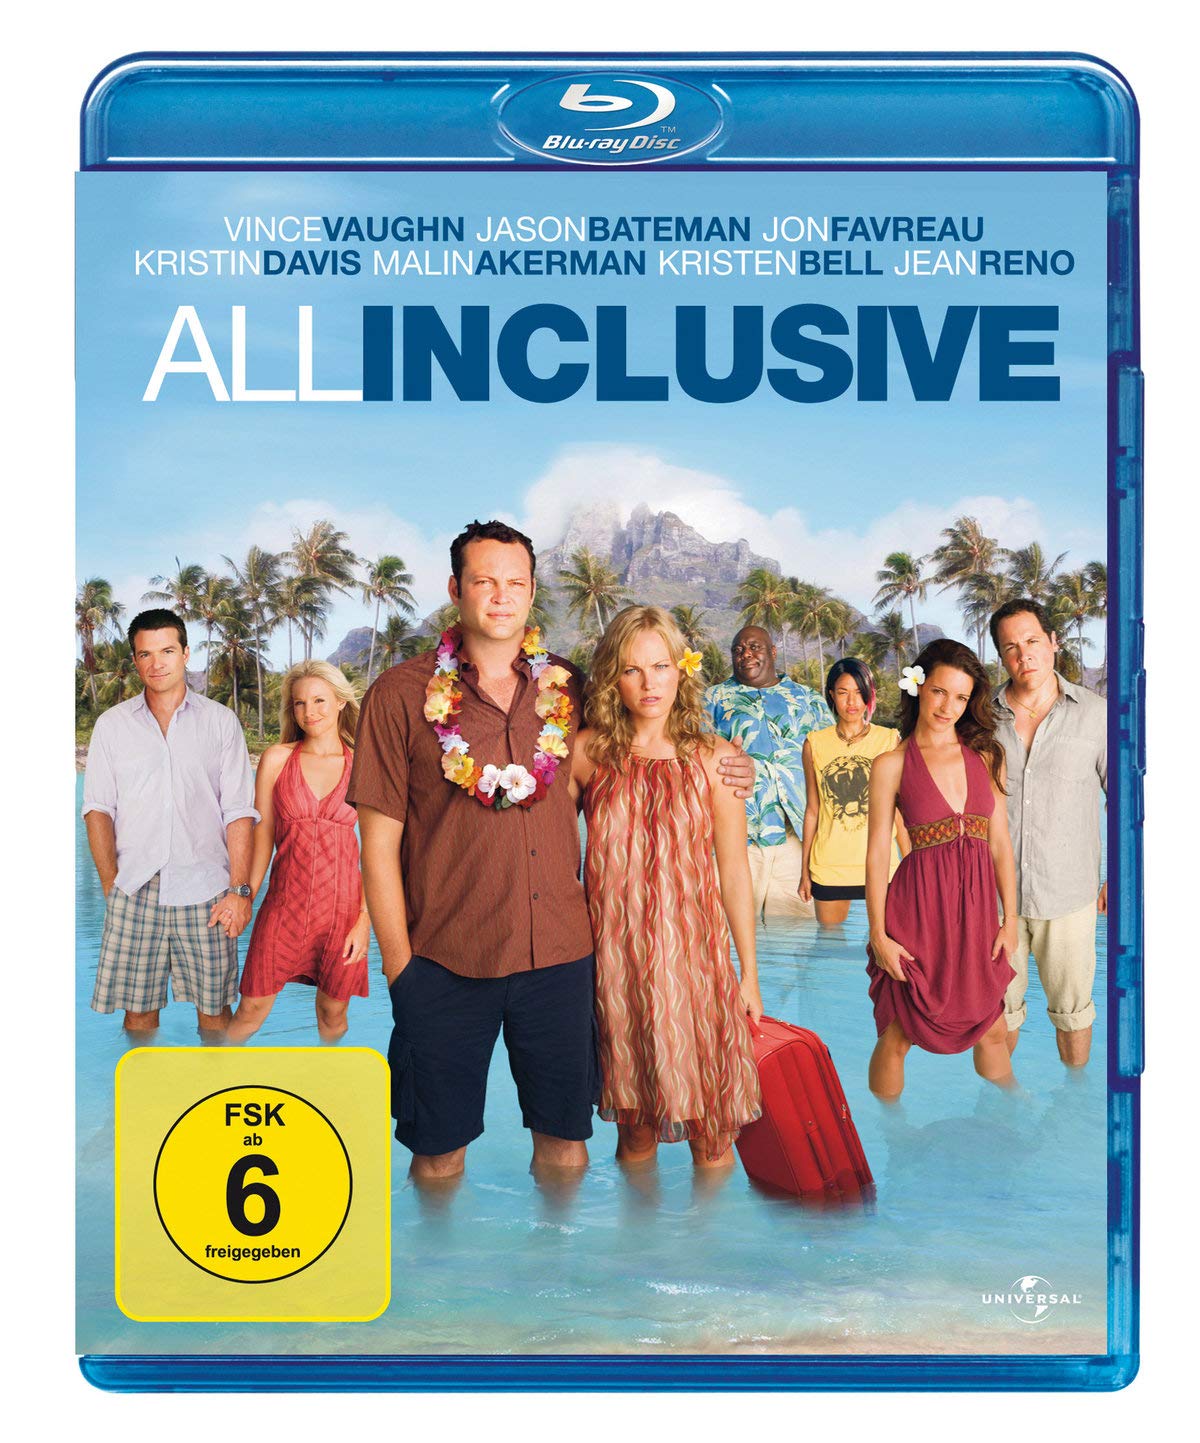 All Inclusive (Blu-ray)